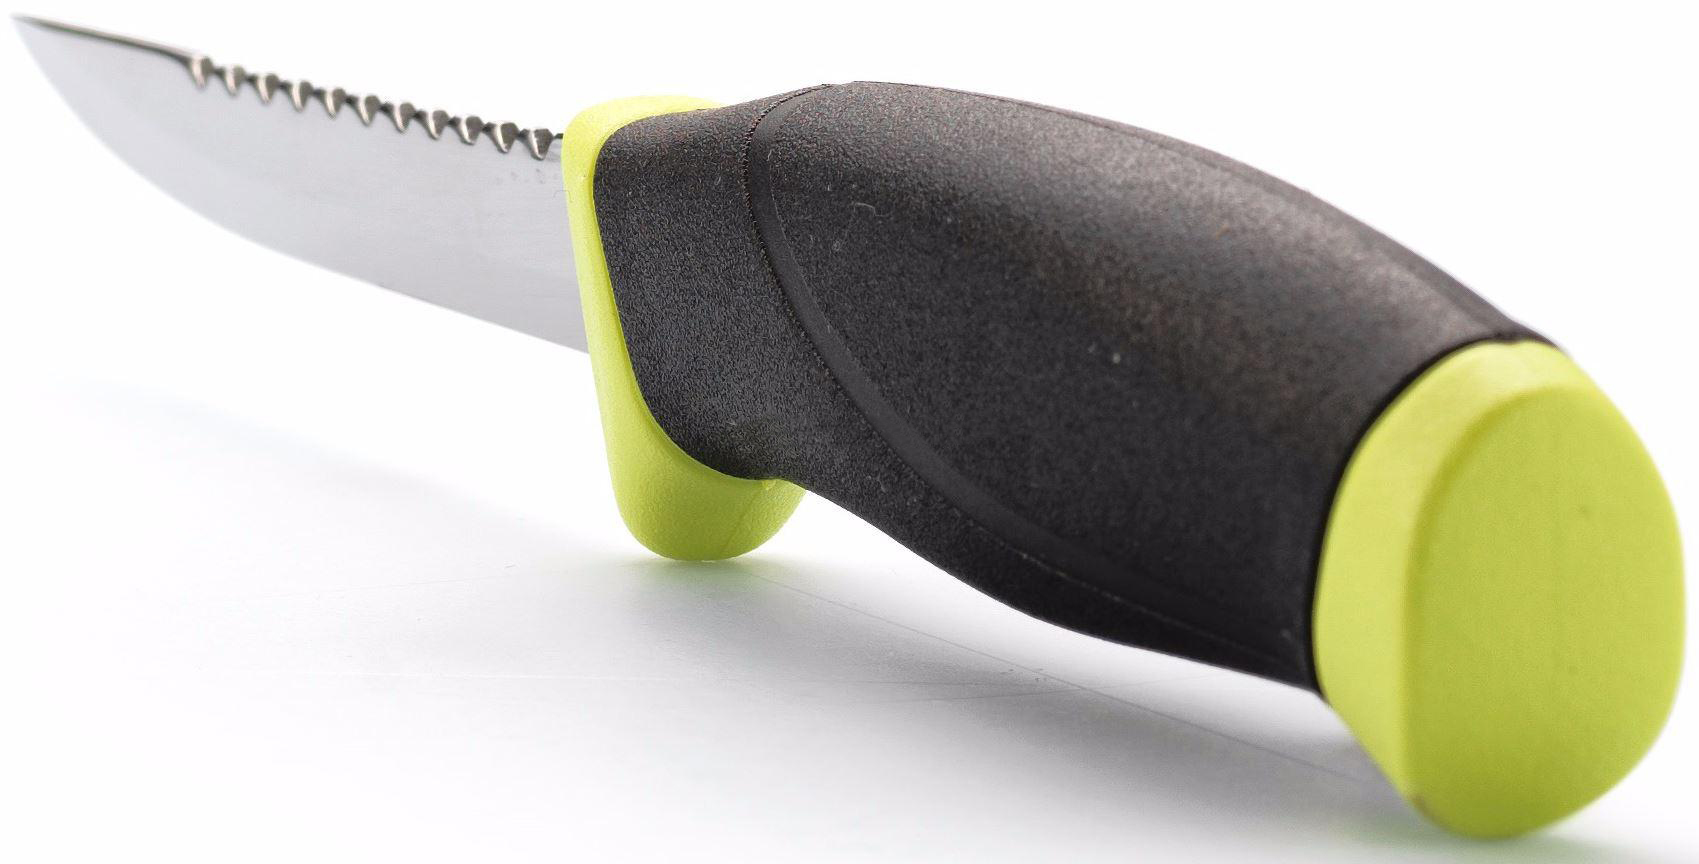 Нож с фиксированным лезвием Morakniv Fishing Comfort Scaler 098, сталь Sandvik 12C27, рукоять резина/пластик - фото 3